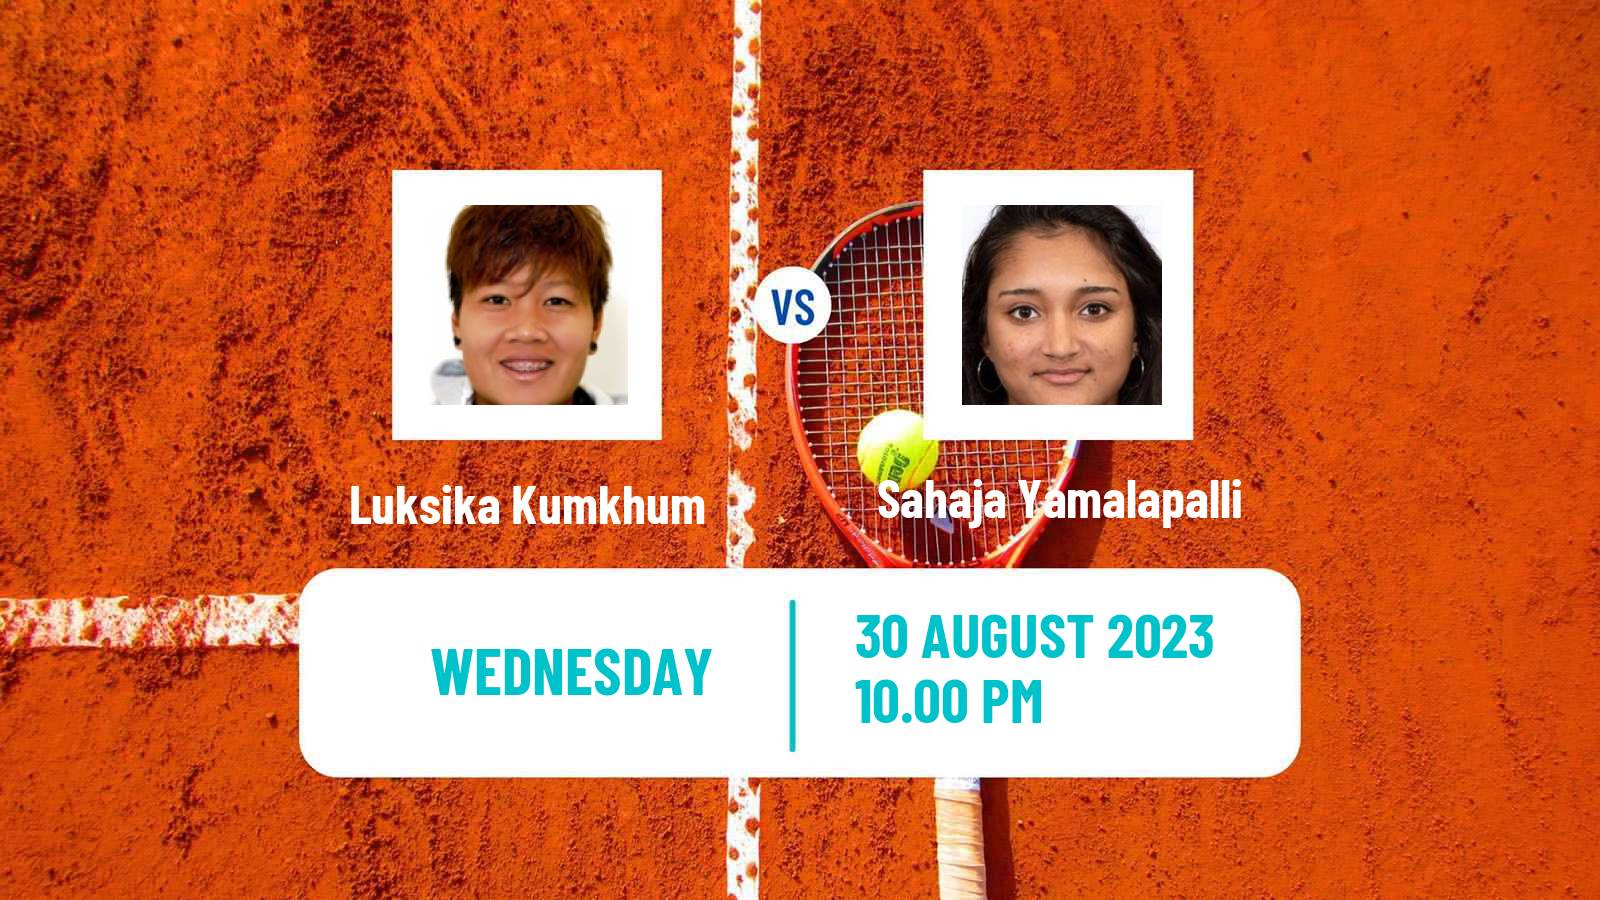 Tennis ITF W25 Nakhon Si Thammarat 3 Women Luksika Kumkhum - Sahaja Yamalapalli